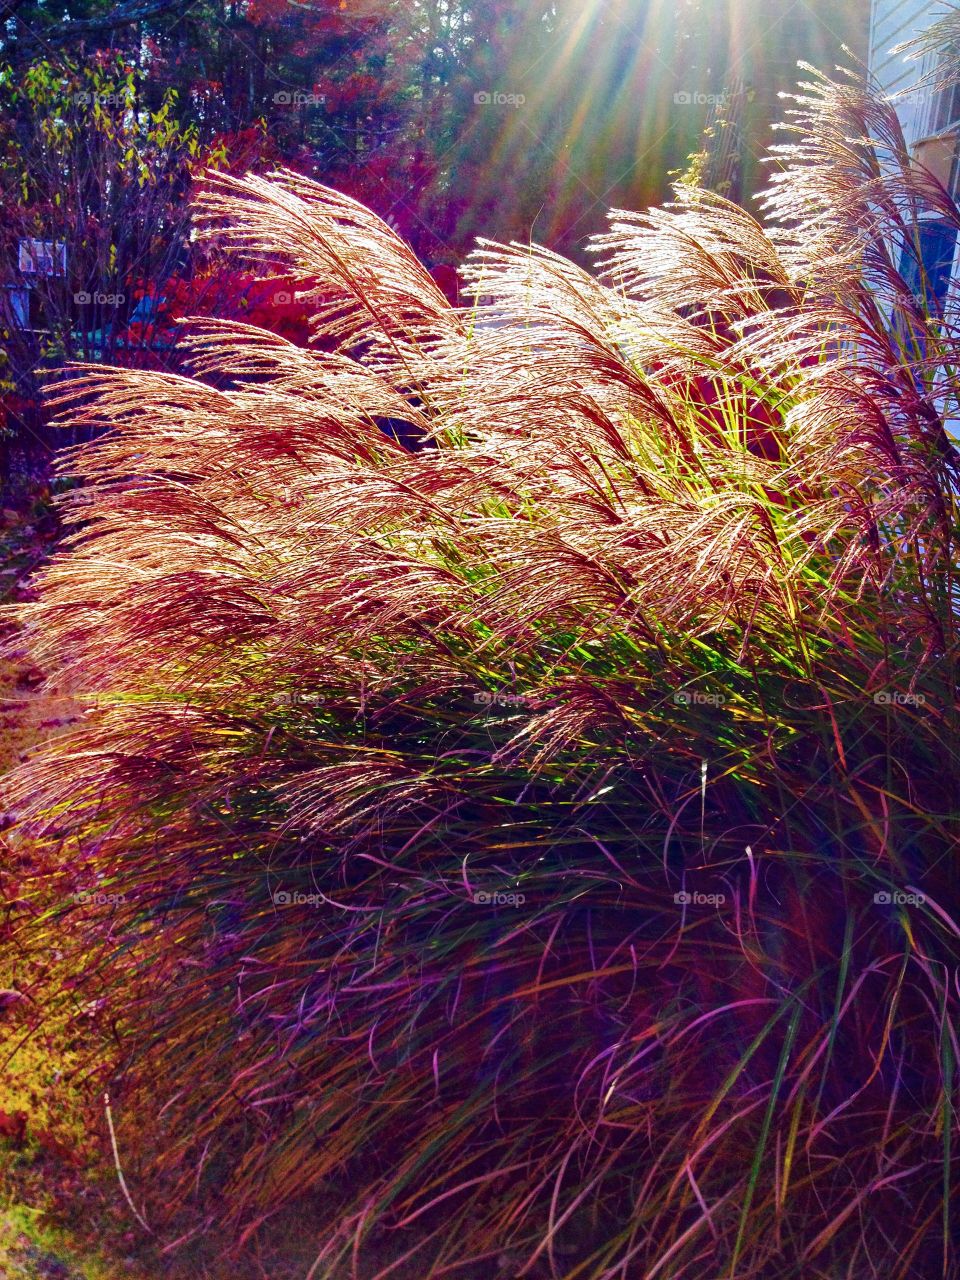 Maiden Grasses in Autumn bloom